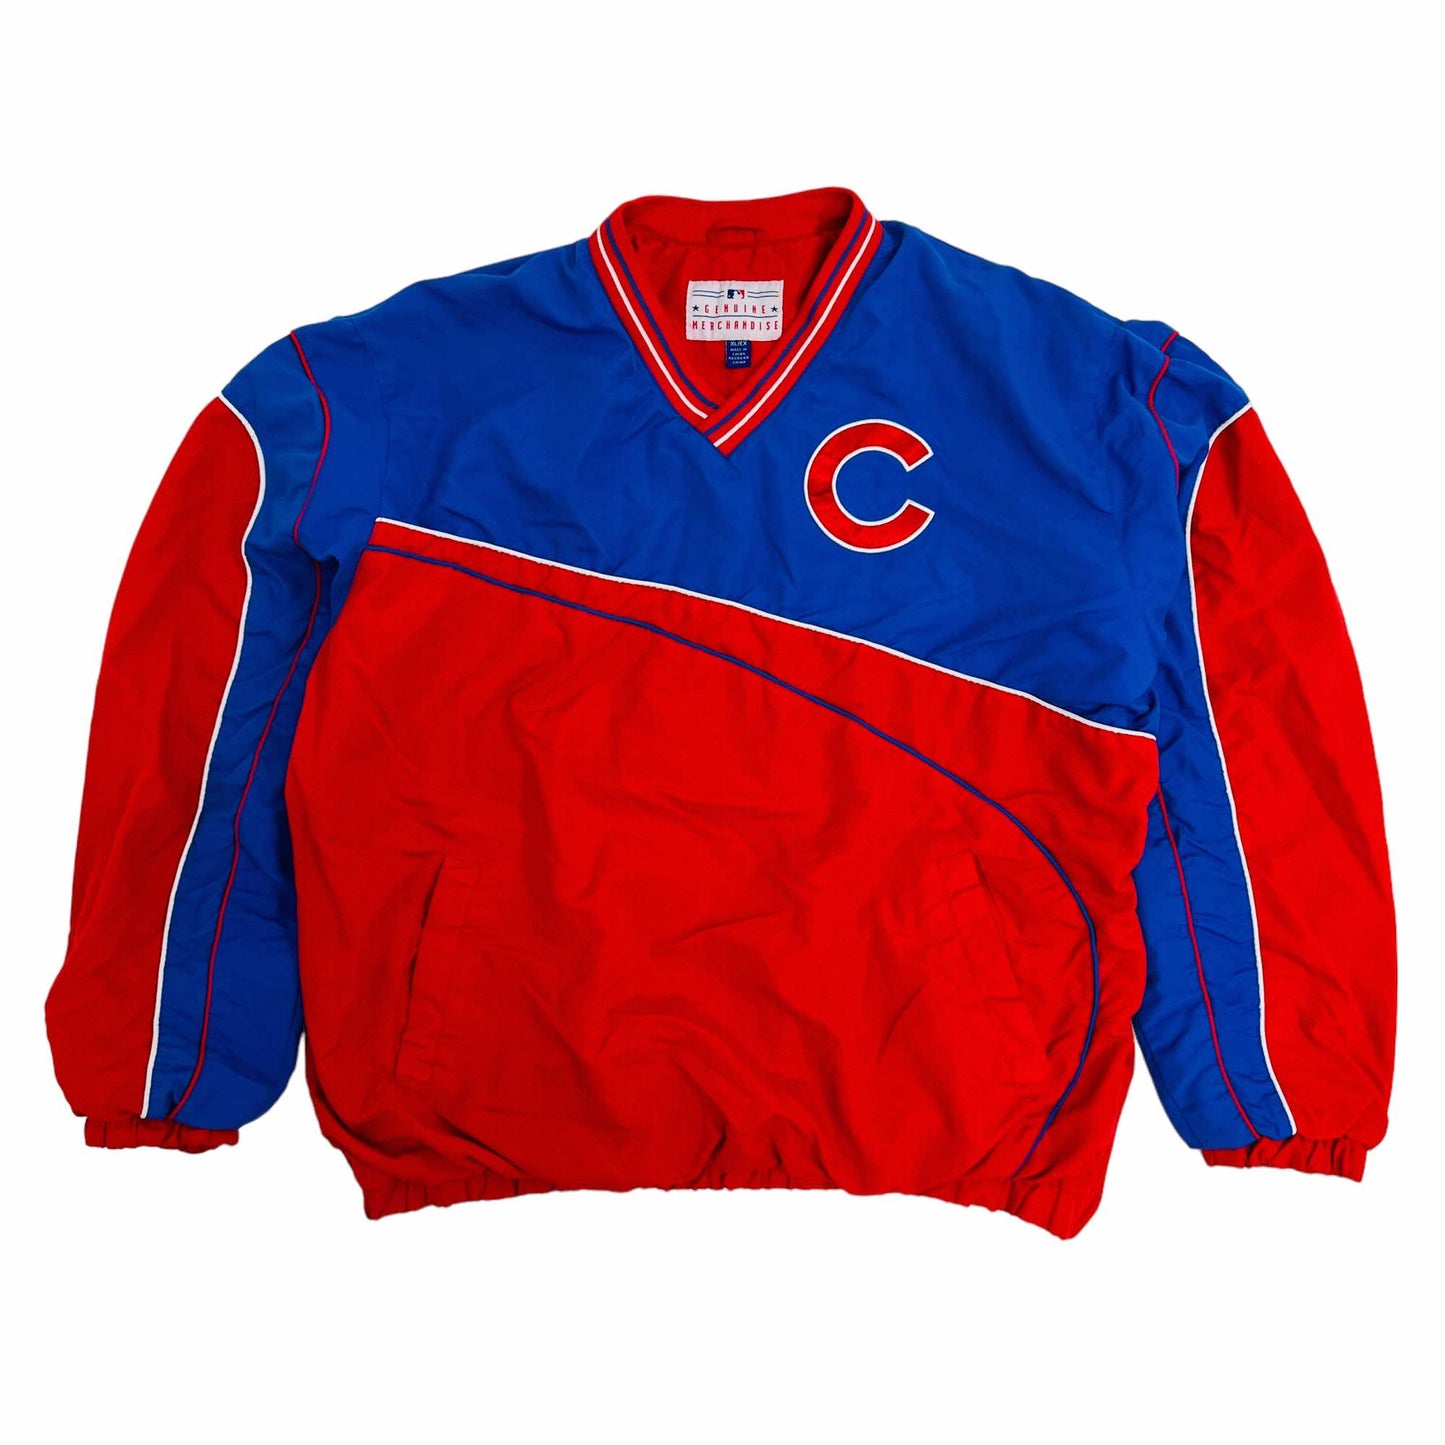 Chicago Cubs Vintage in Chicago Cubs Team Shop 